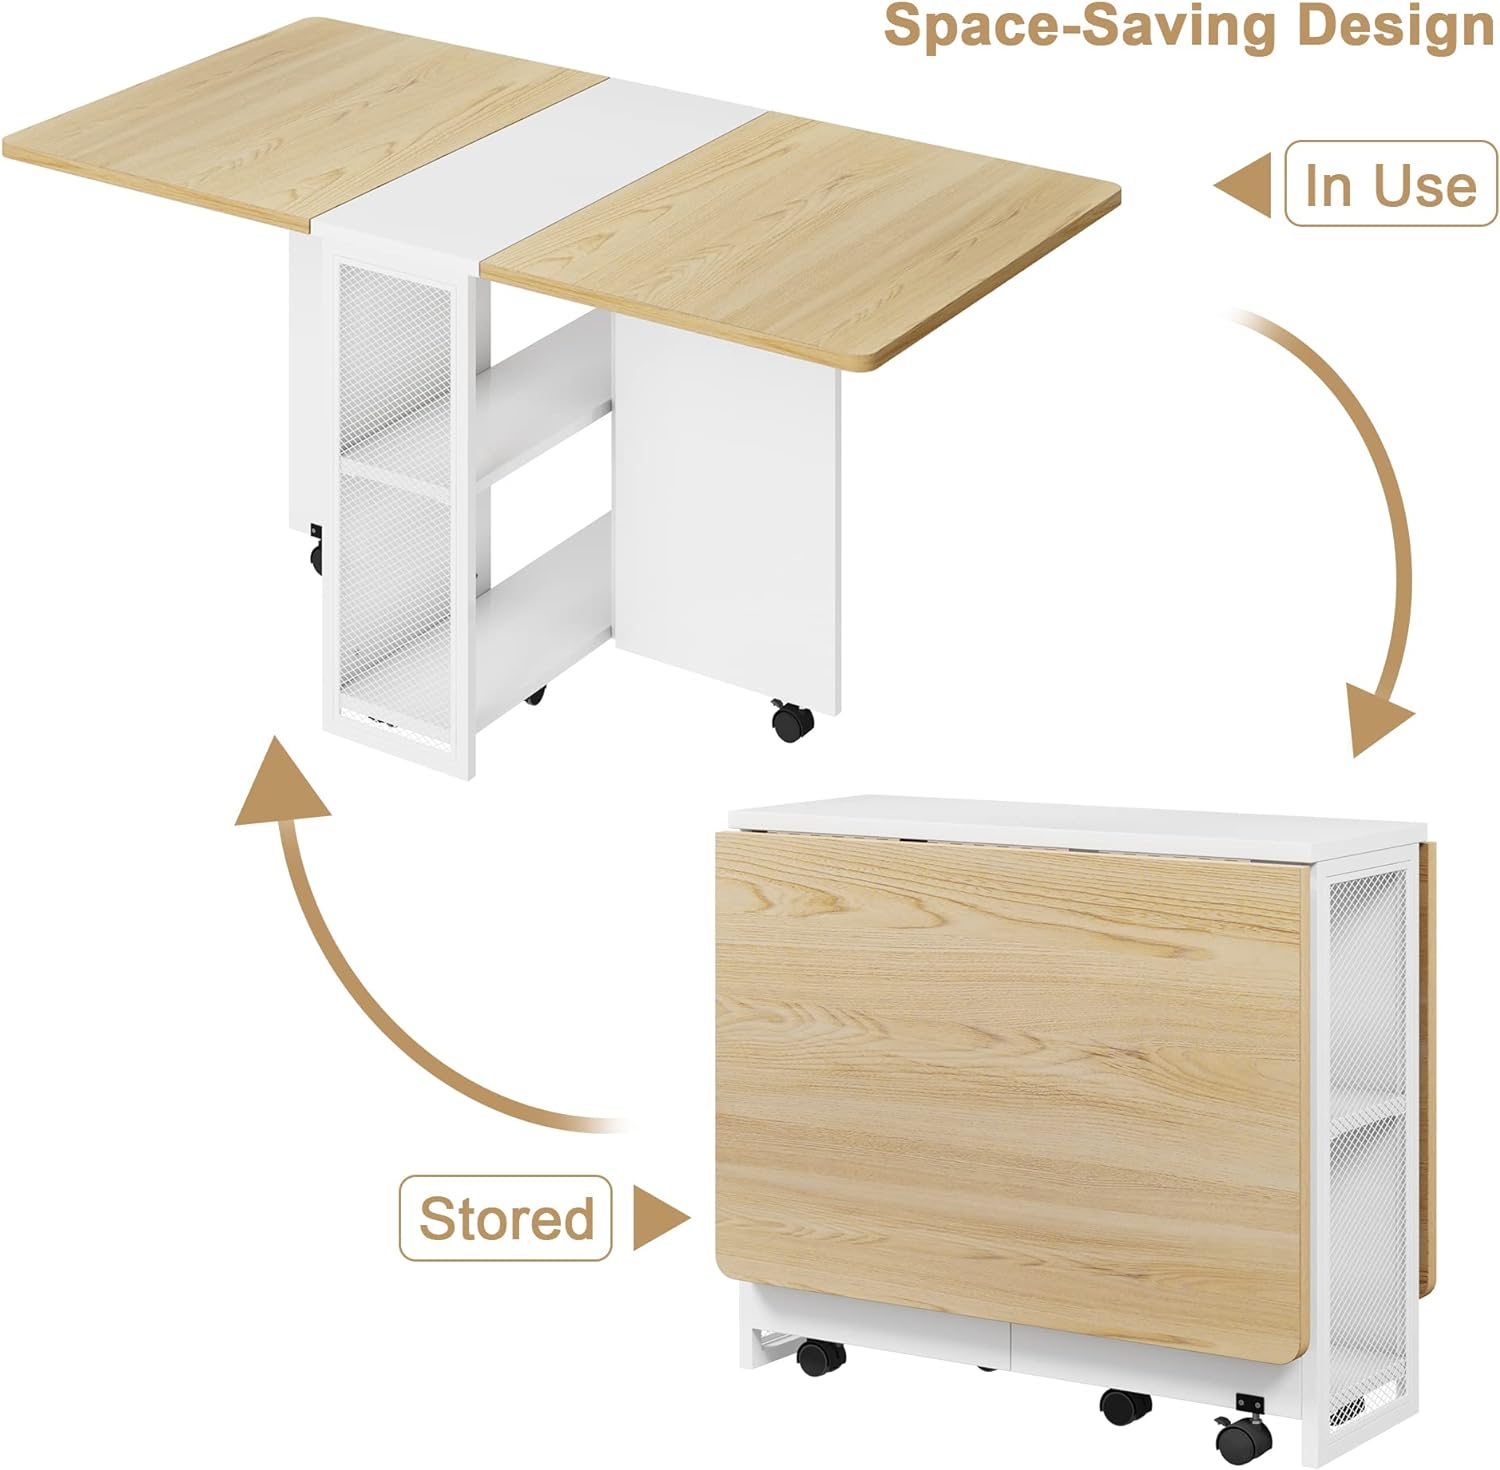 Mesa de comedor plegable que ahorra espacio con 2 niveles de almacenamiento